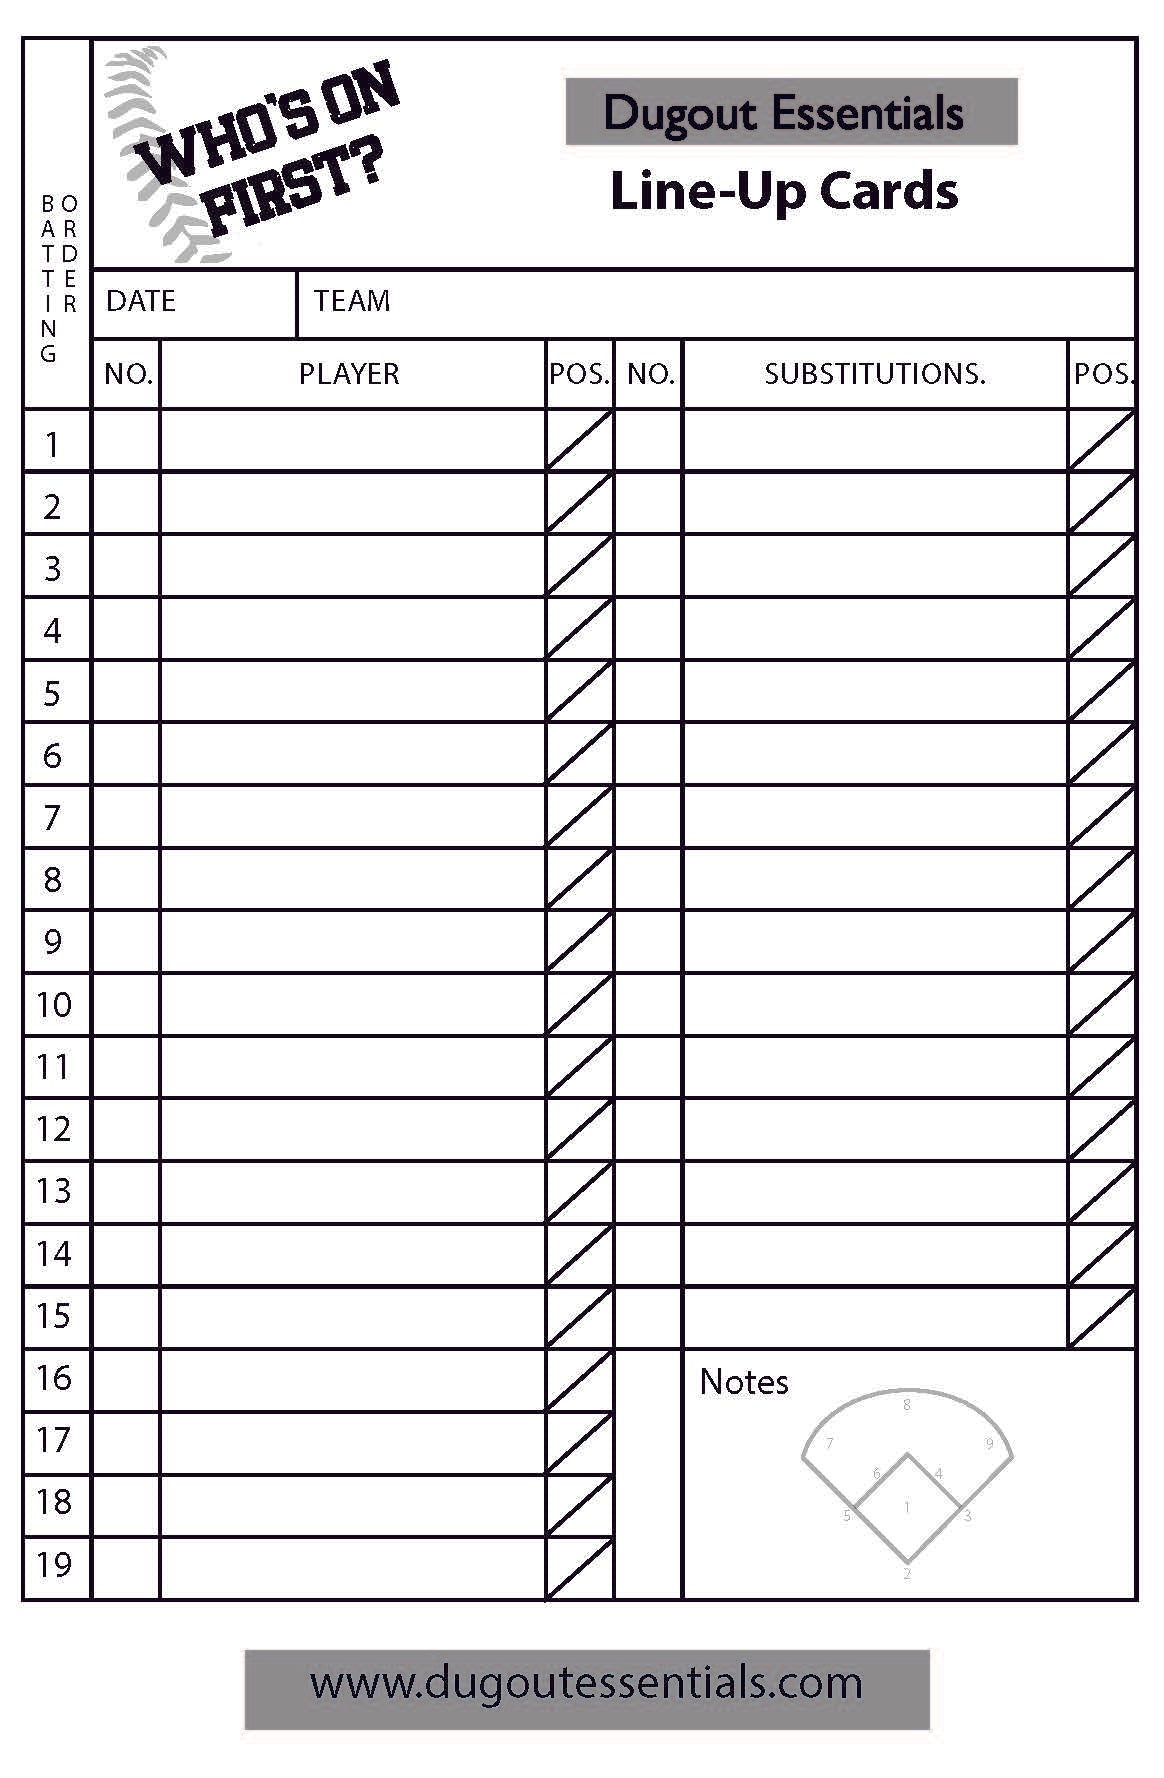 Printable Baseball Lineup Card - FREE